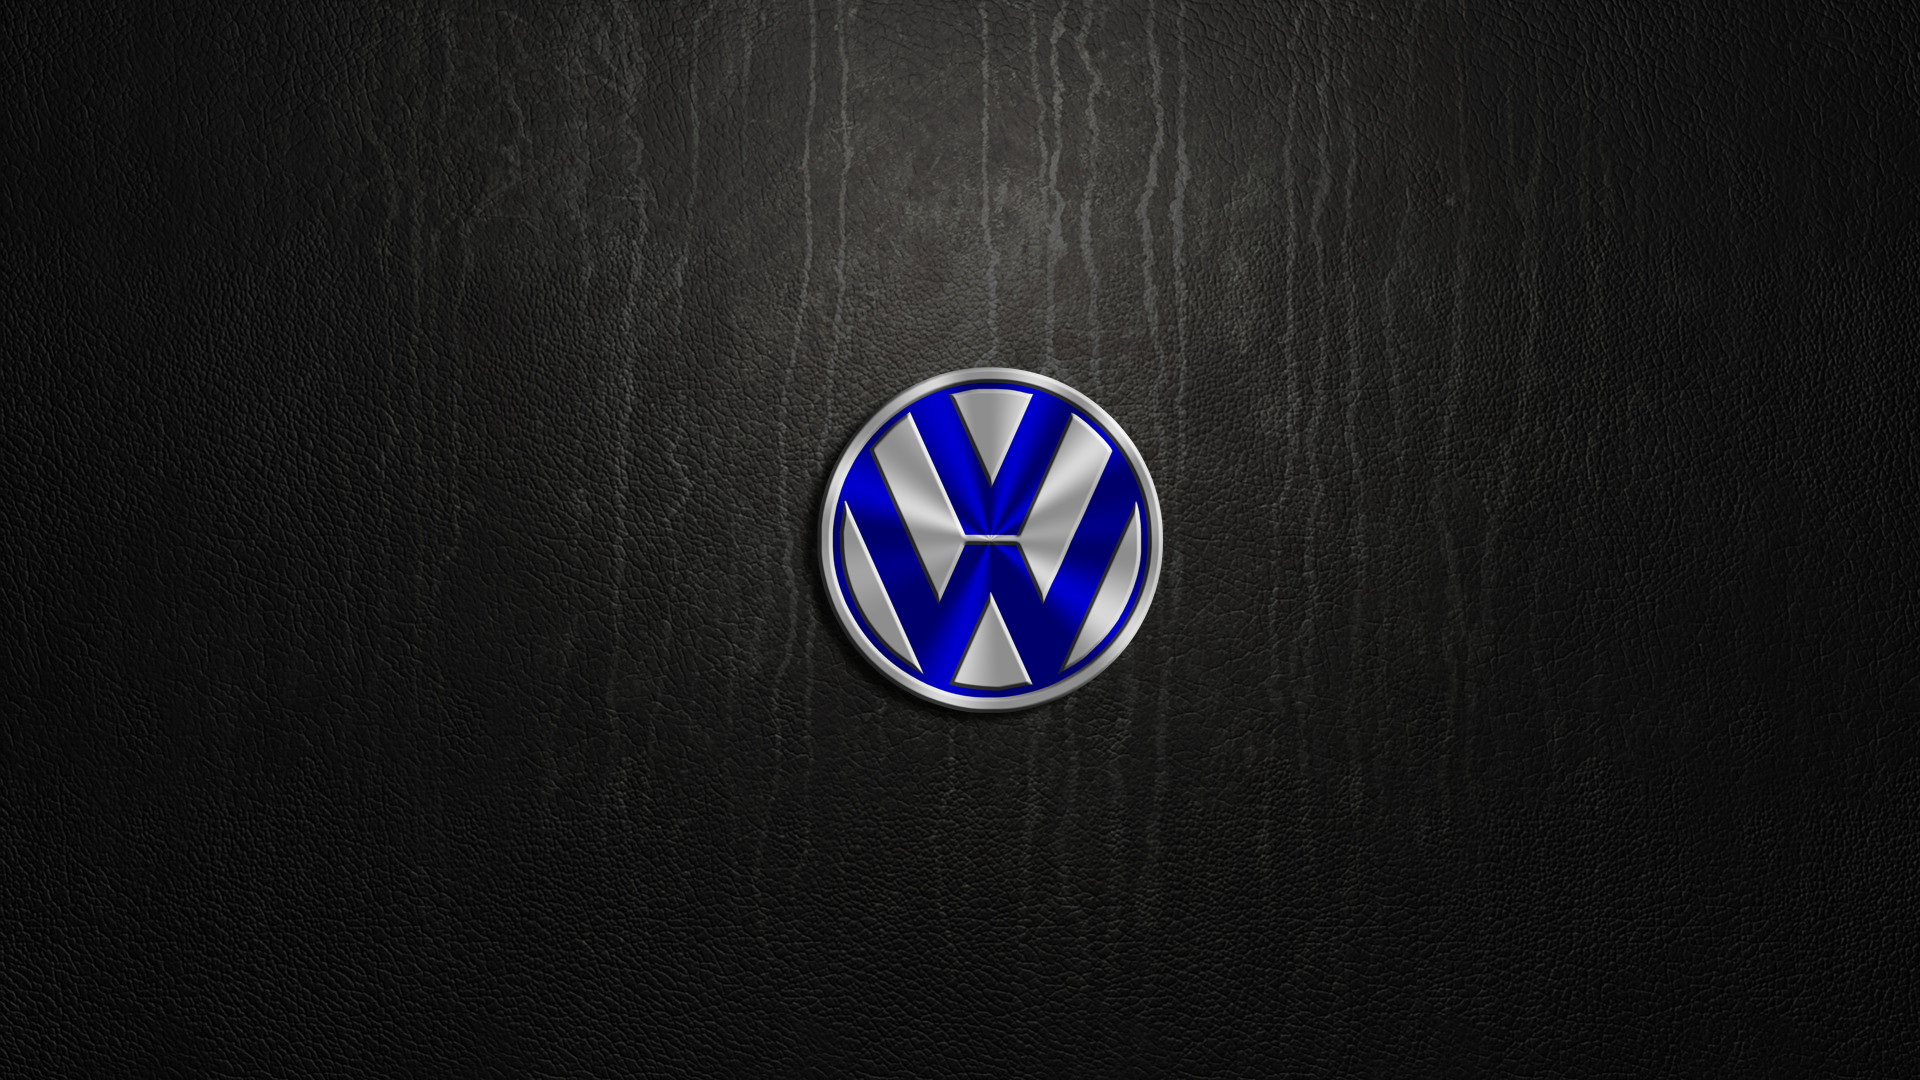 1920x1080 Volkswagen Wallpaper Desktop #n8N | Cars | Pinterest | Wallpaper desktop,  Volkswagen and Cars